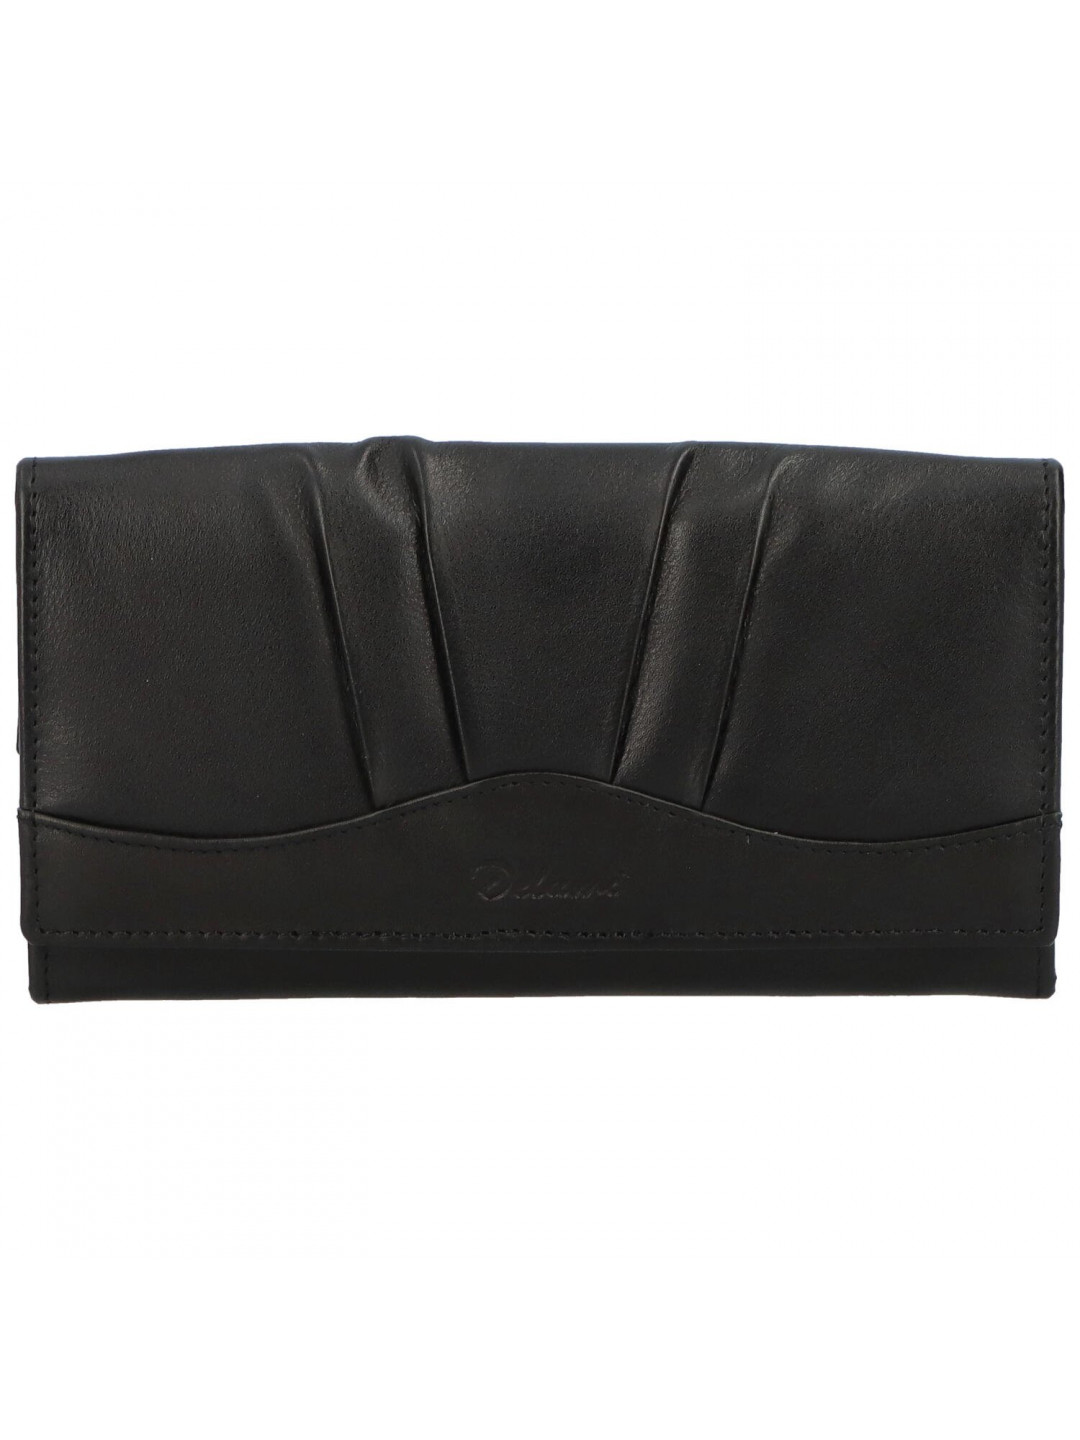 Dámská kožená peněženka černá – Delami Gislinde